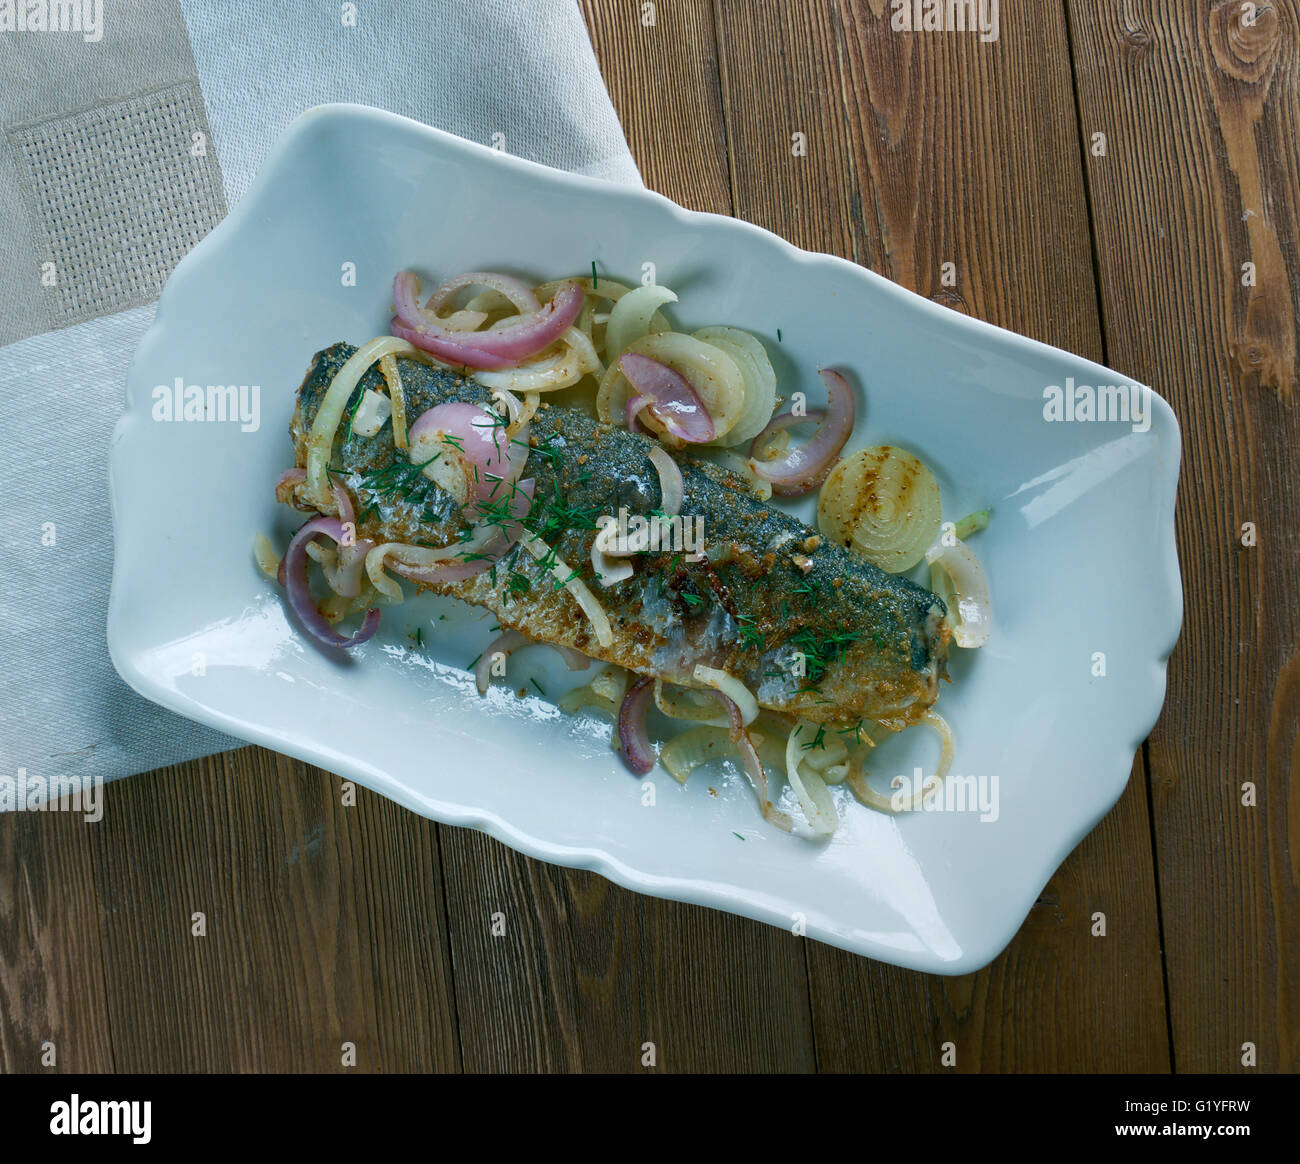 Eingelegte Bratheringe - fried pickled herring.German cuisine Stock ...